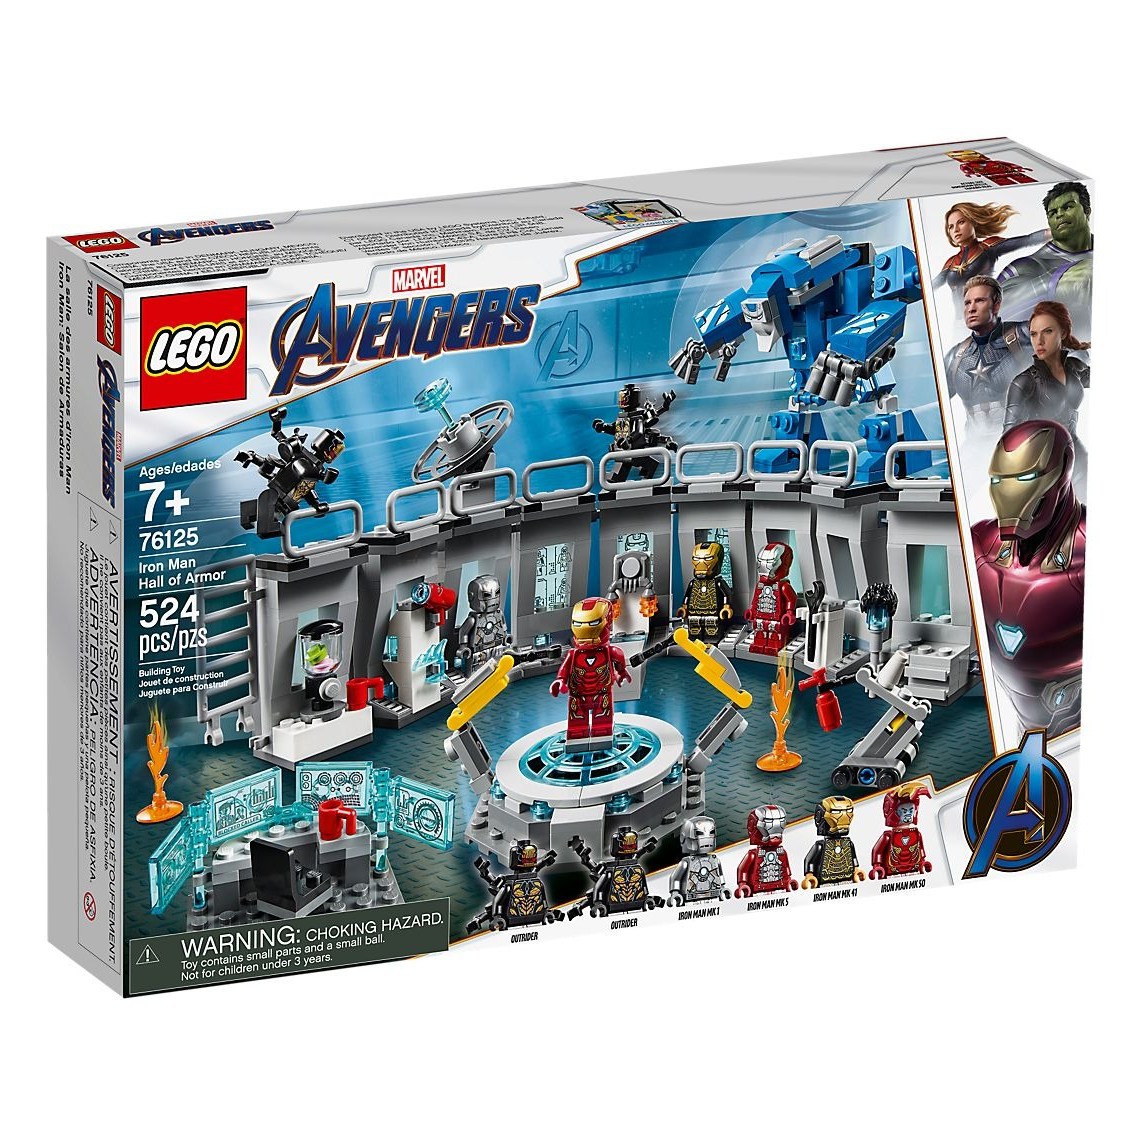 LEGO 레고 76125 어벤져스 아이언맨 연구소 Iron Man Hall of Armor, 혼합 색상 